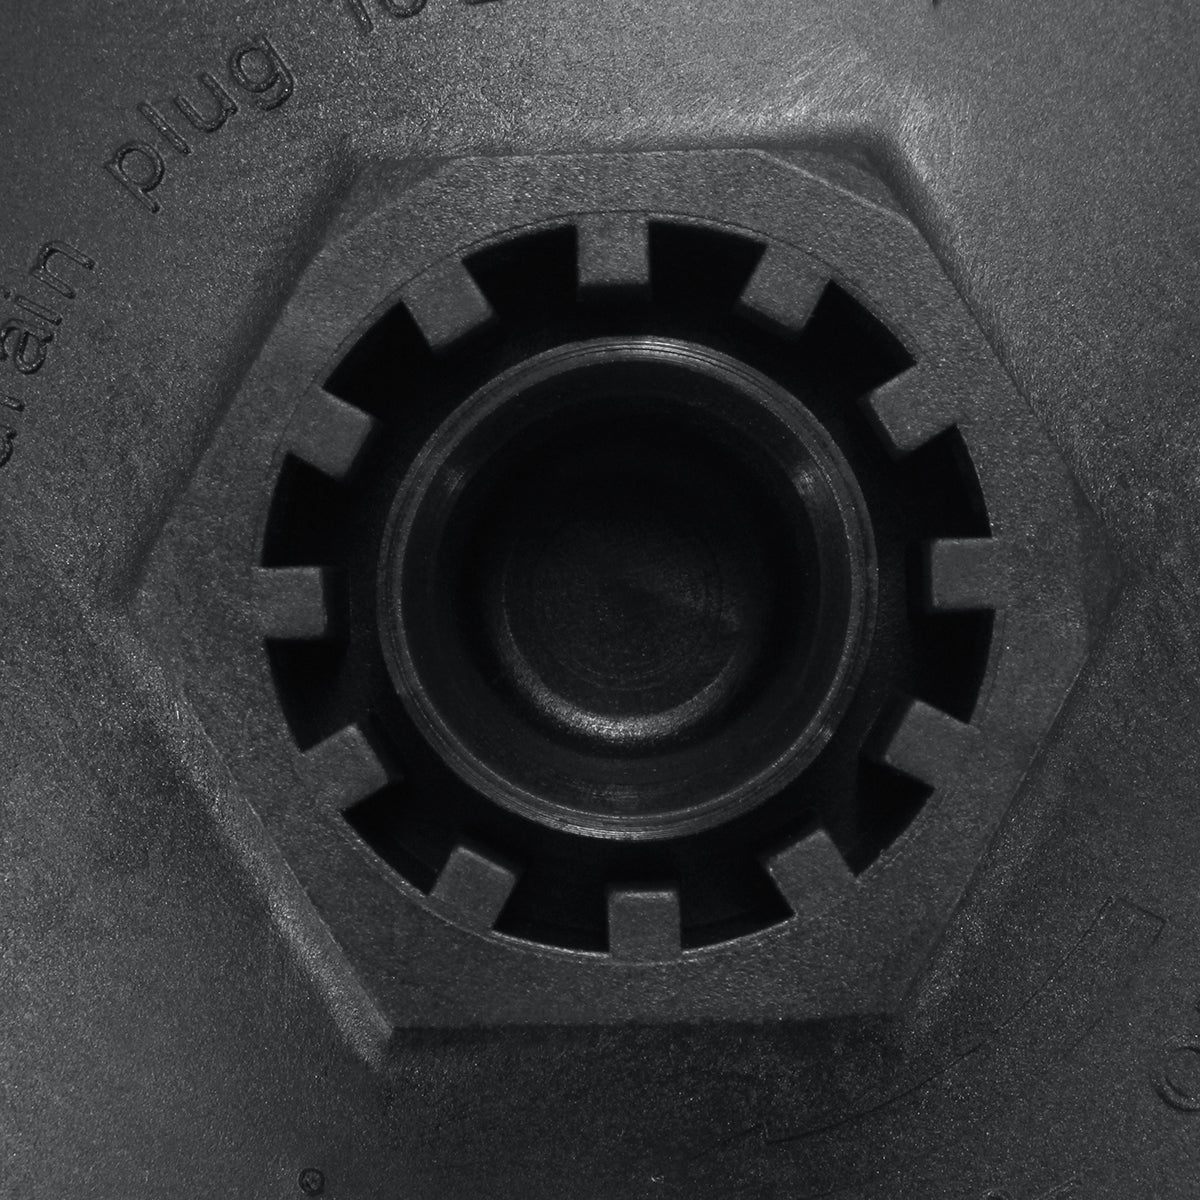 Black Fuel Oil Filter Cover Cap Bowl